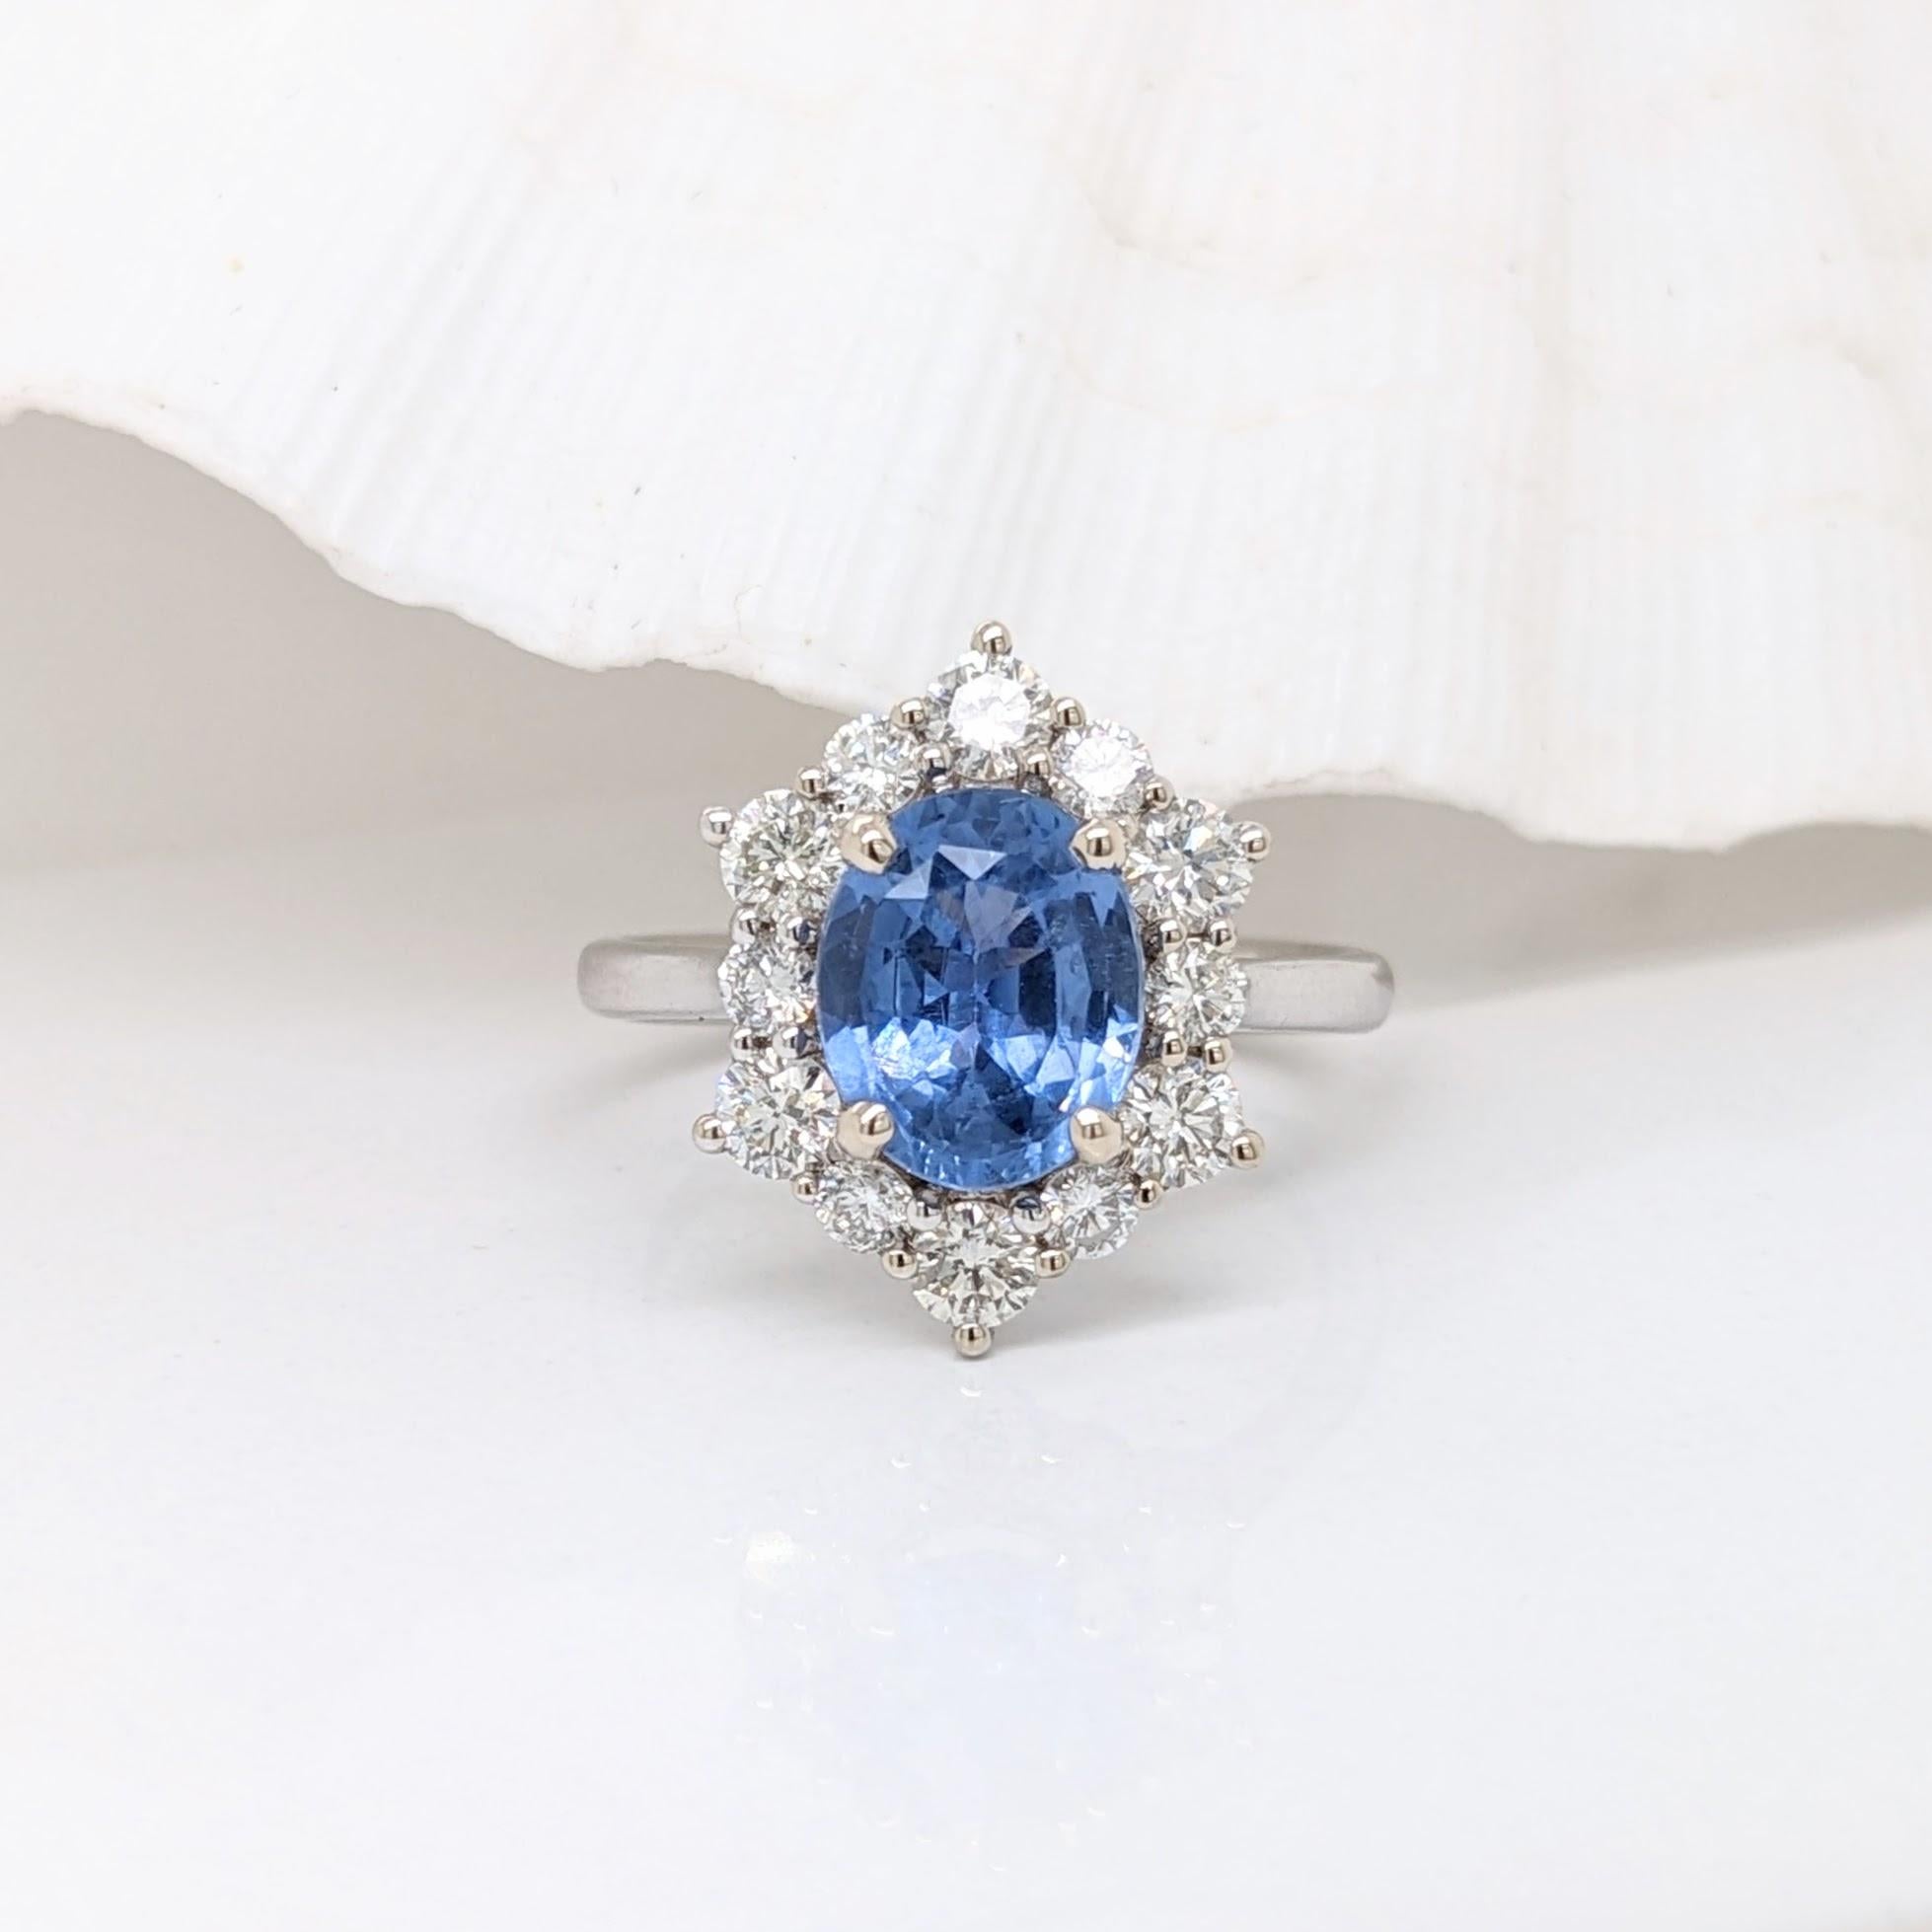 Atemberaubend ist eine Untertreibung für diesen Ring! Der Halo aus natürlichen Diamanten und die Akzente betonen das Blau dieses Saphirs aus Ceylon perfekt. Das Halo-Design vermittelt ein leichtes Vintage-Gefühl, aber auf die eleganteste Weise.